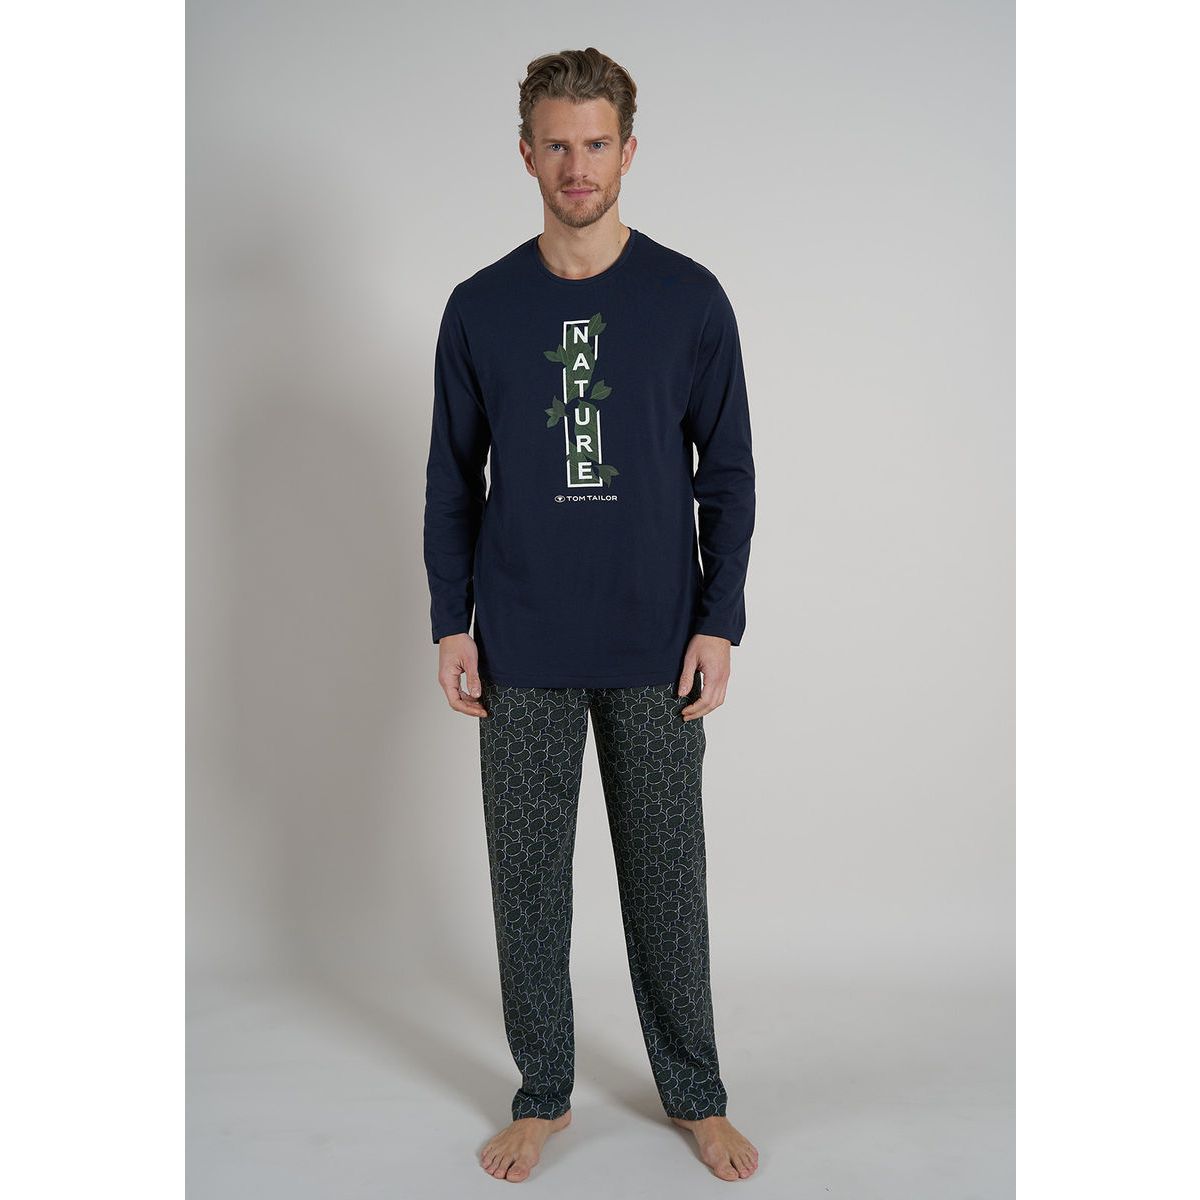 Groene Tom Tailor pyjama Nature | Gratis verzending vanaf € 40,- | Gratis  retour | Snel in huis | Online de mooiste pyjama\'s, nachthemden, ondermode  en meer | Pyjamas